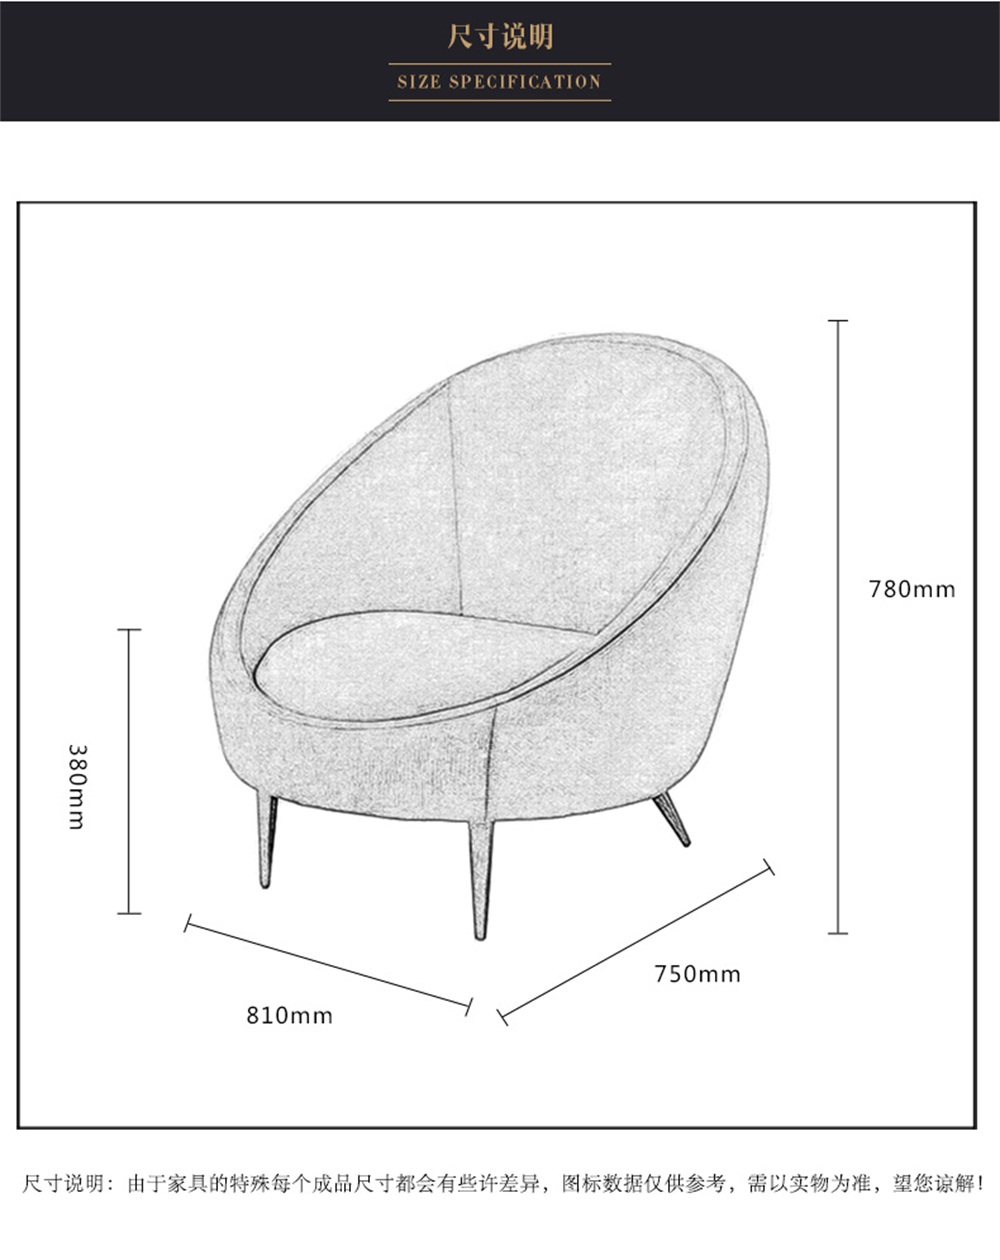 产品说明a:   时尚绒面蛋壳休闲椅      进门尺寸:820mm